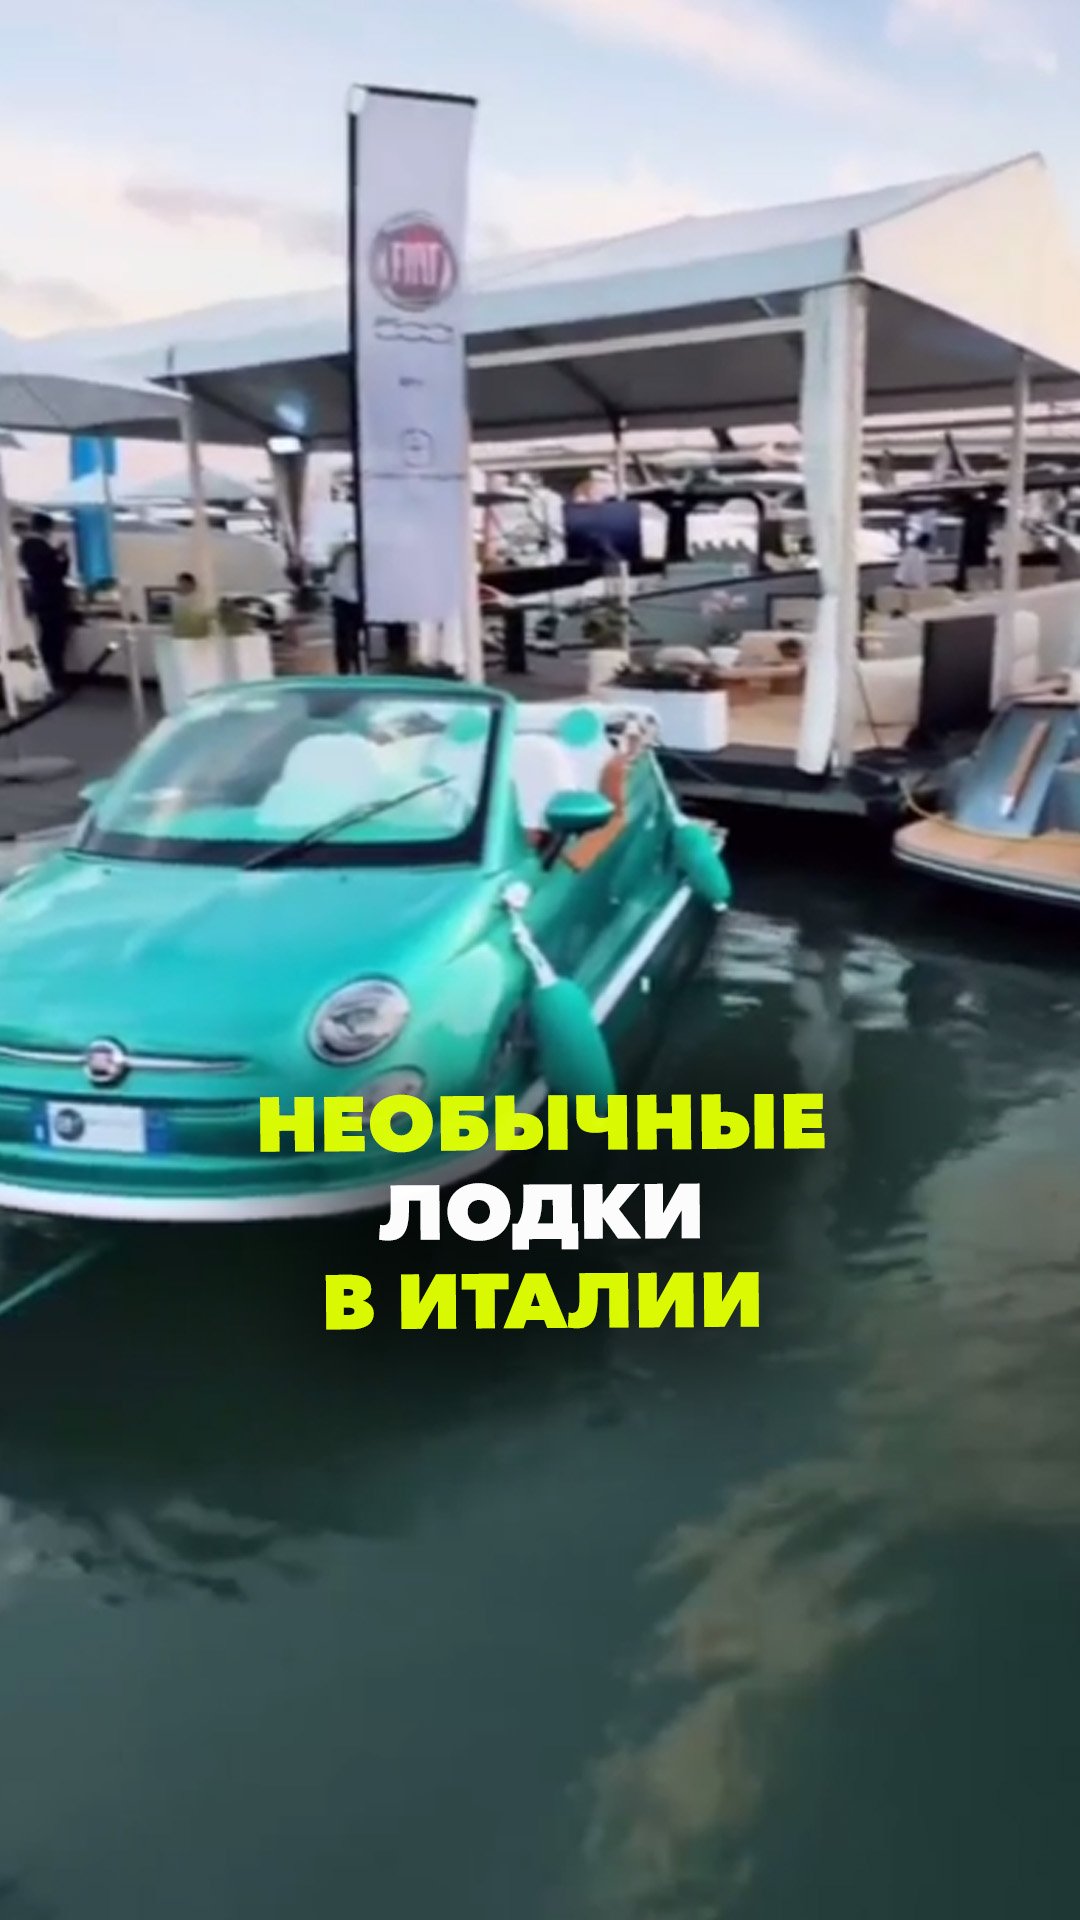 Лодки из машин в Италии: Fiat 500 превращают в катера для водных прогулок